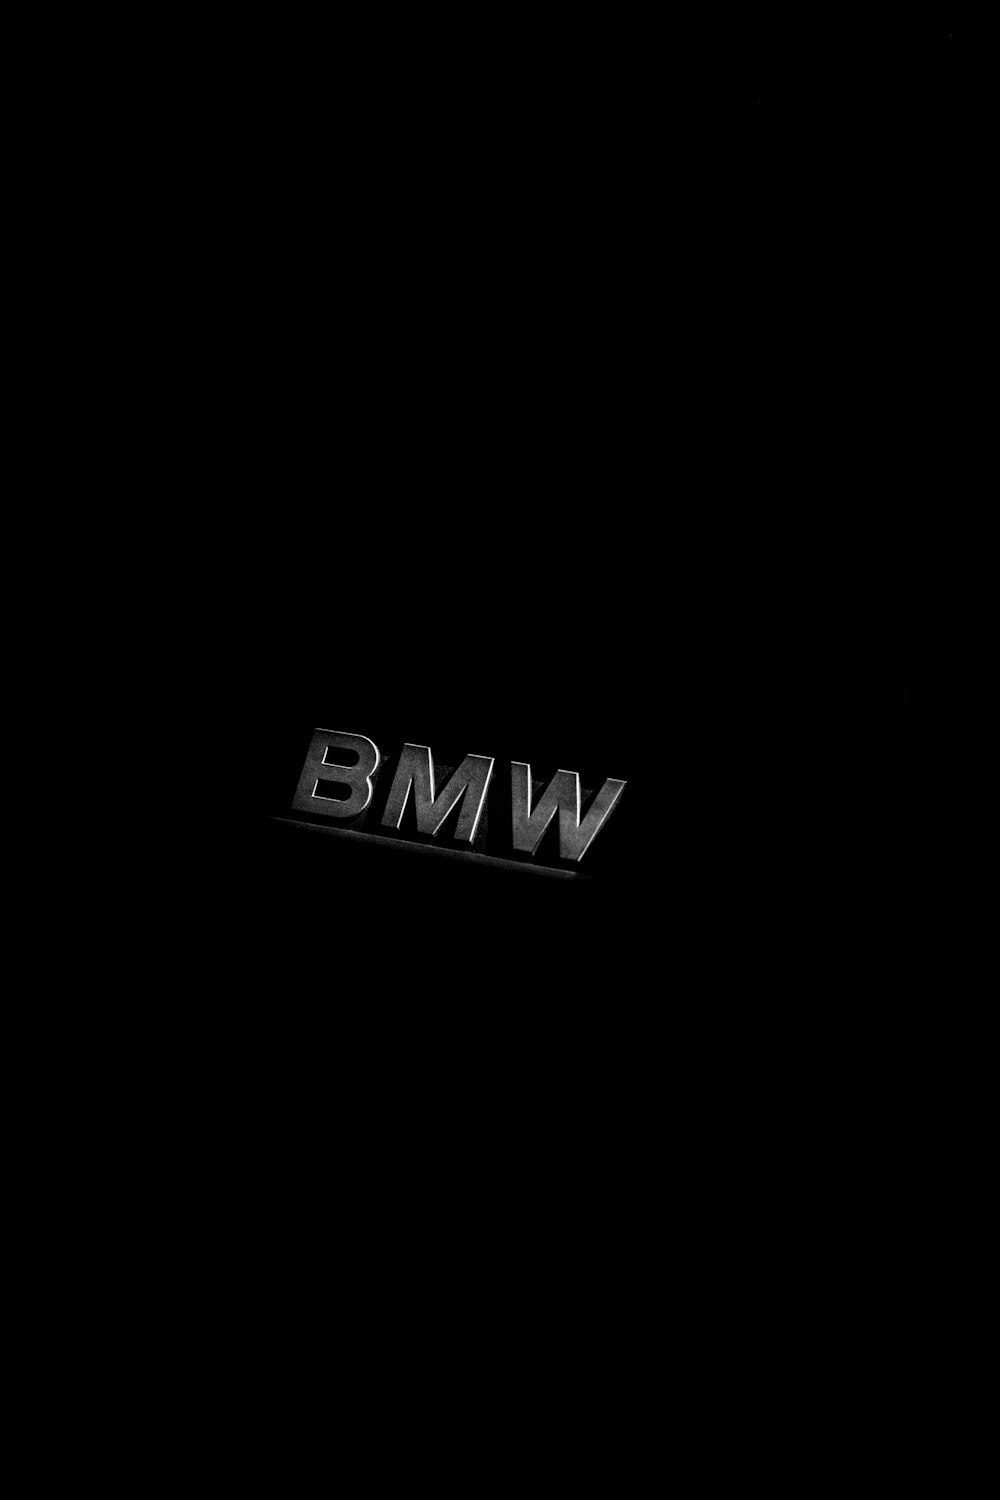 BMW emblem on black background photo – Free Jura Image on Unsplash